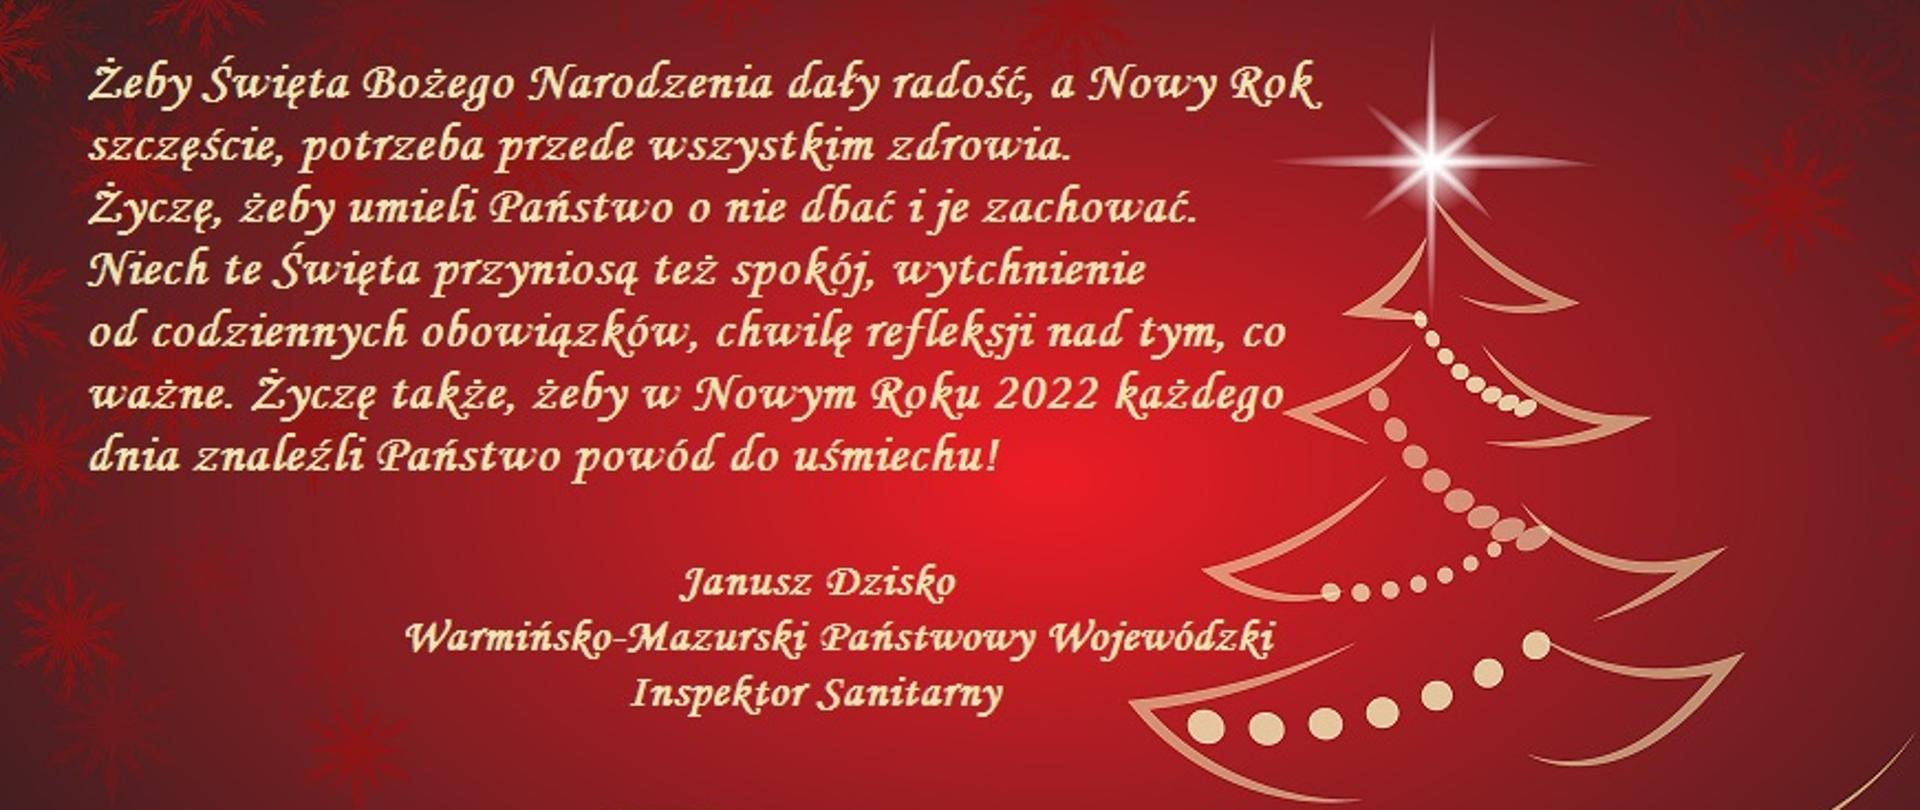 kartka z życzeniami świątecznymi oraz noworocznymi od warmińsko-mazurskiego inspektora sanitarnego 